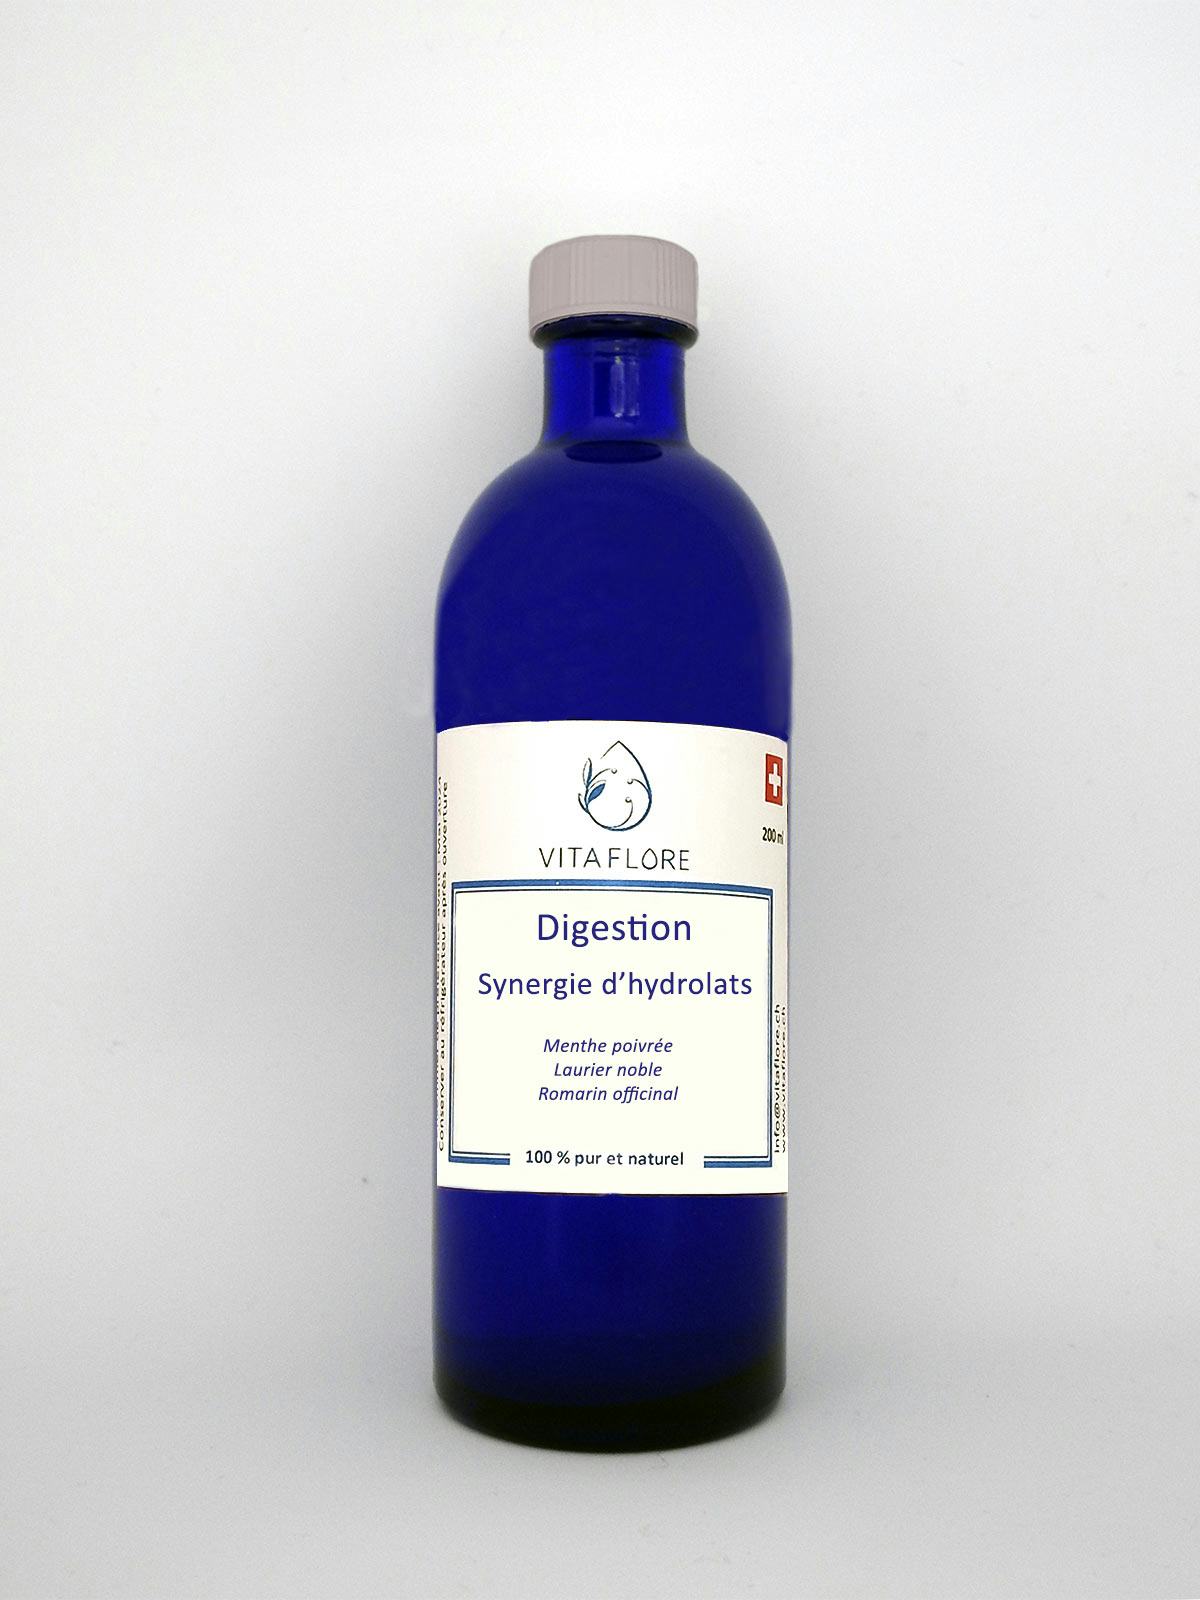 Sinergia degli idrosoli – Digestione, prodotto artigianale per la vendita diretta in Svizzera